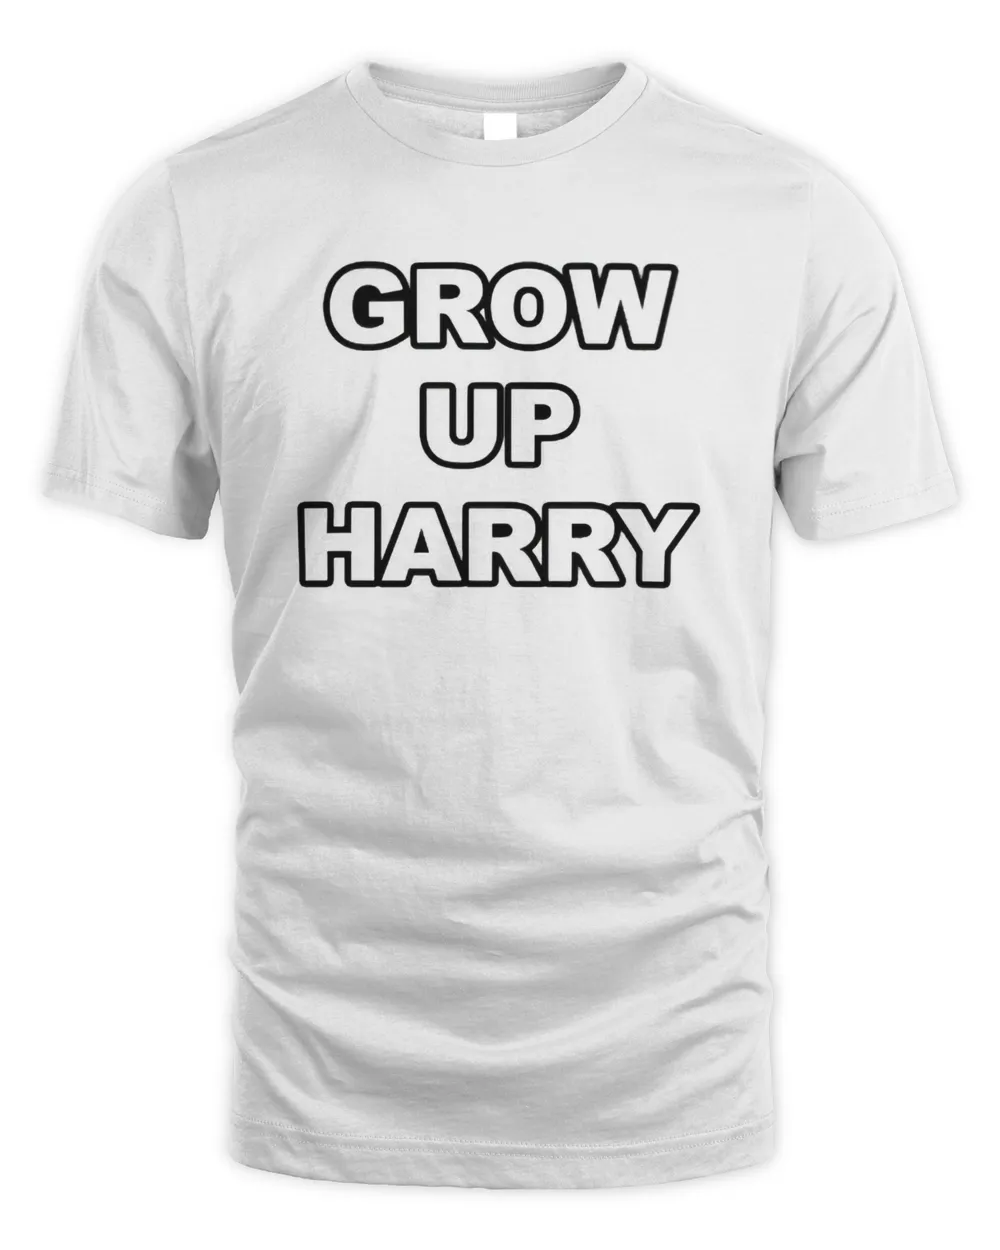 Grow up harry shirt